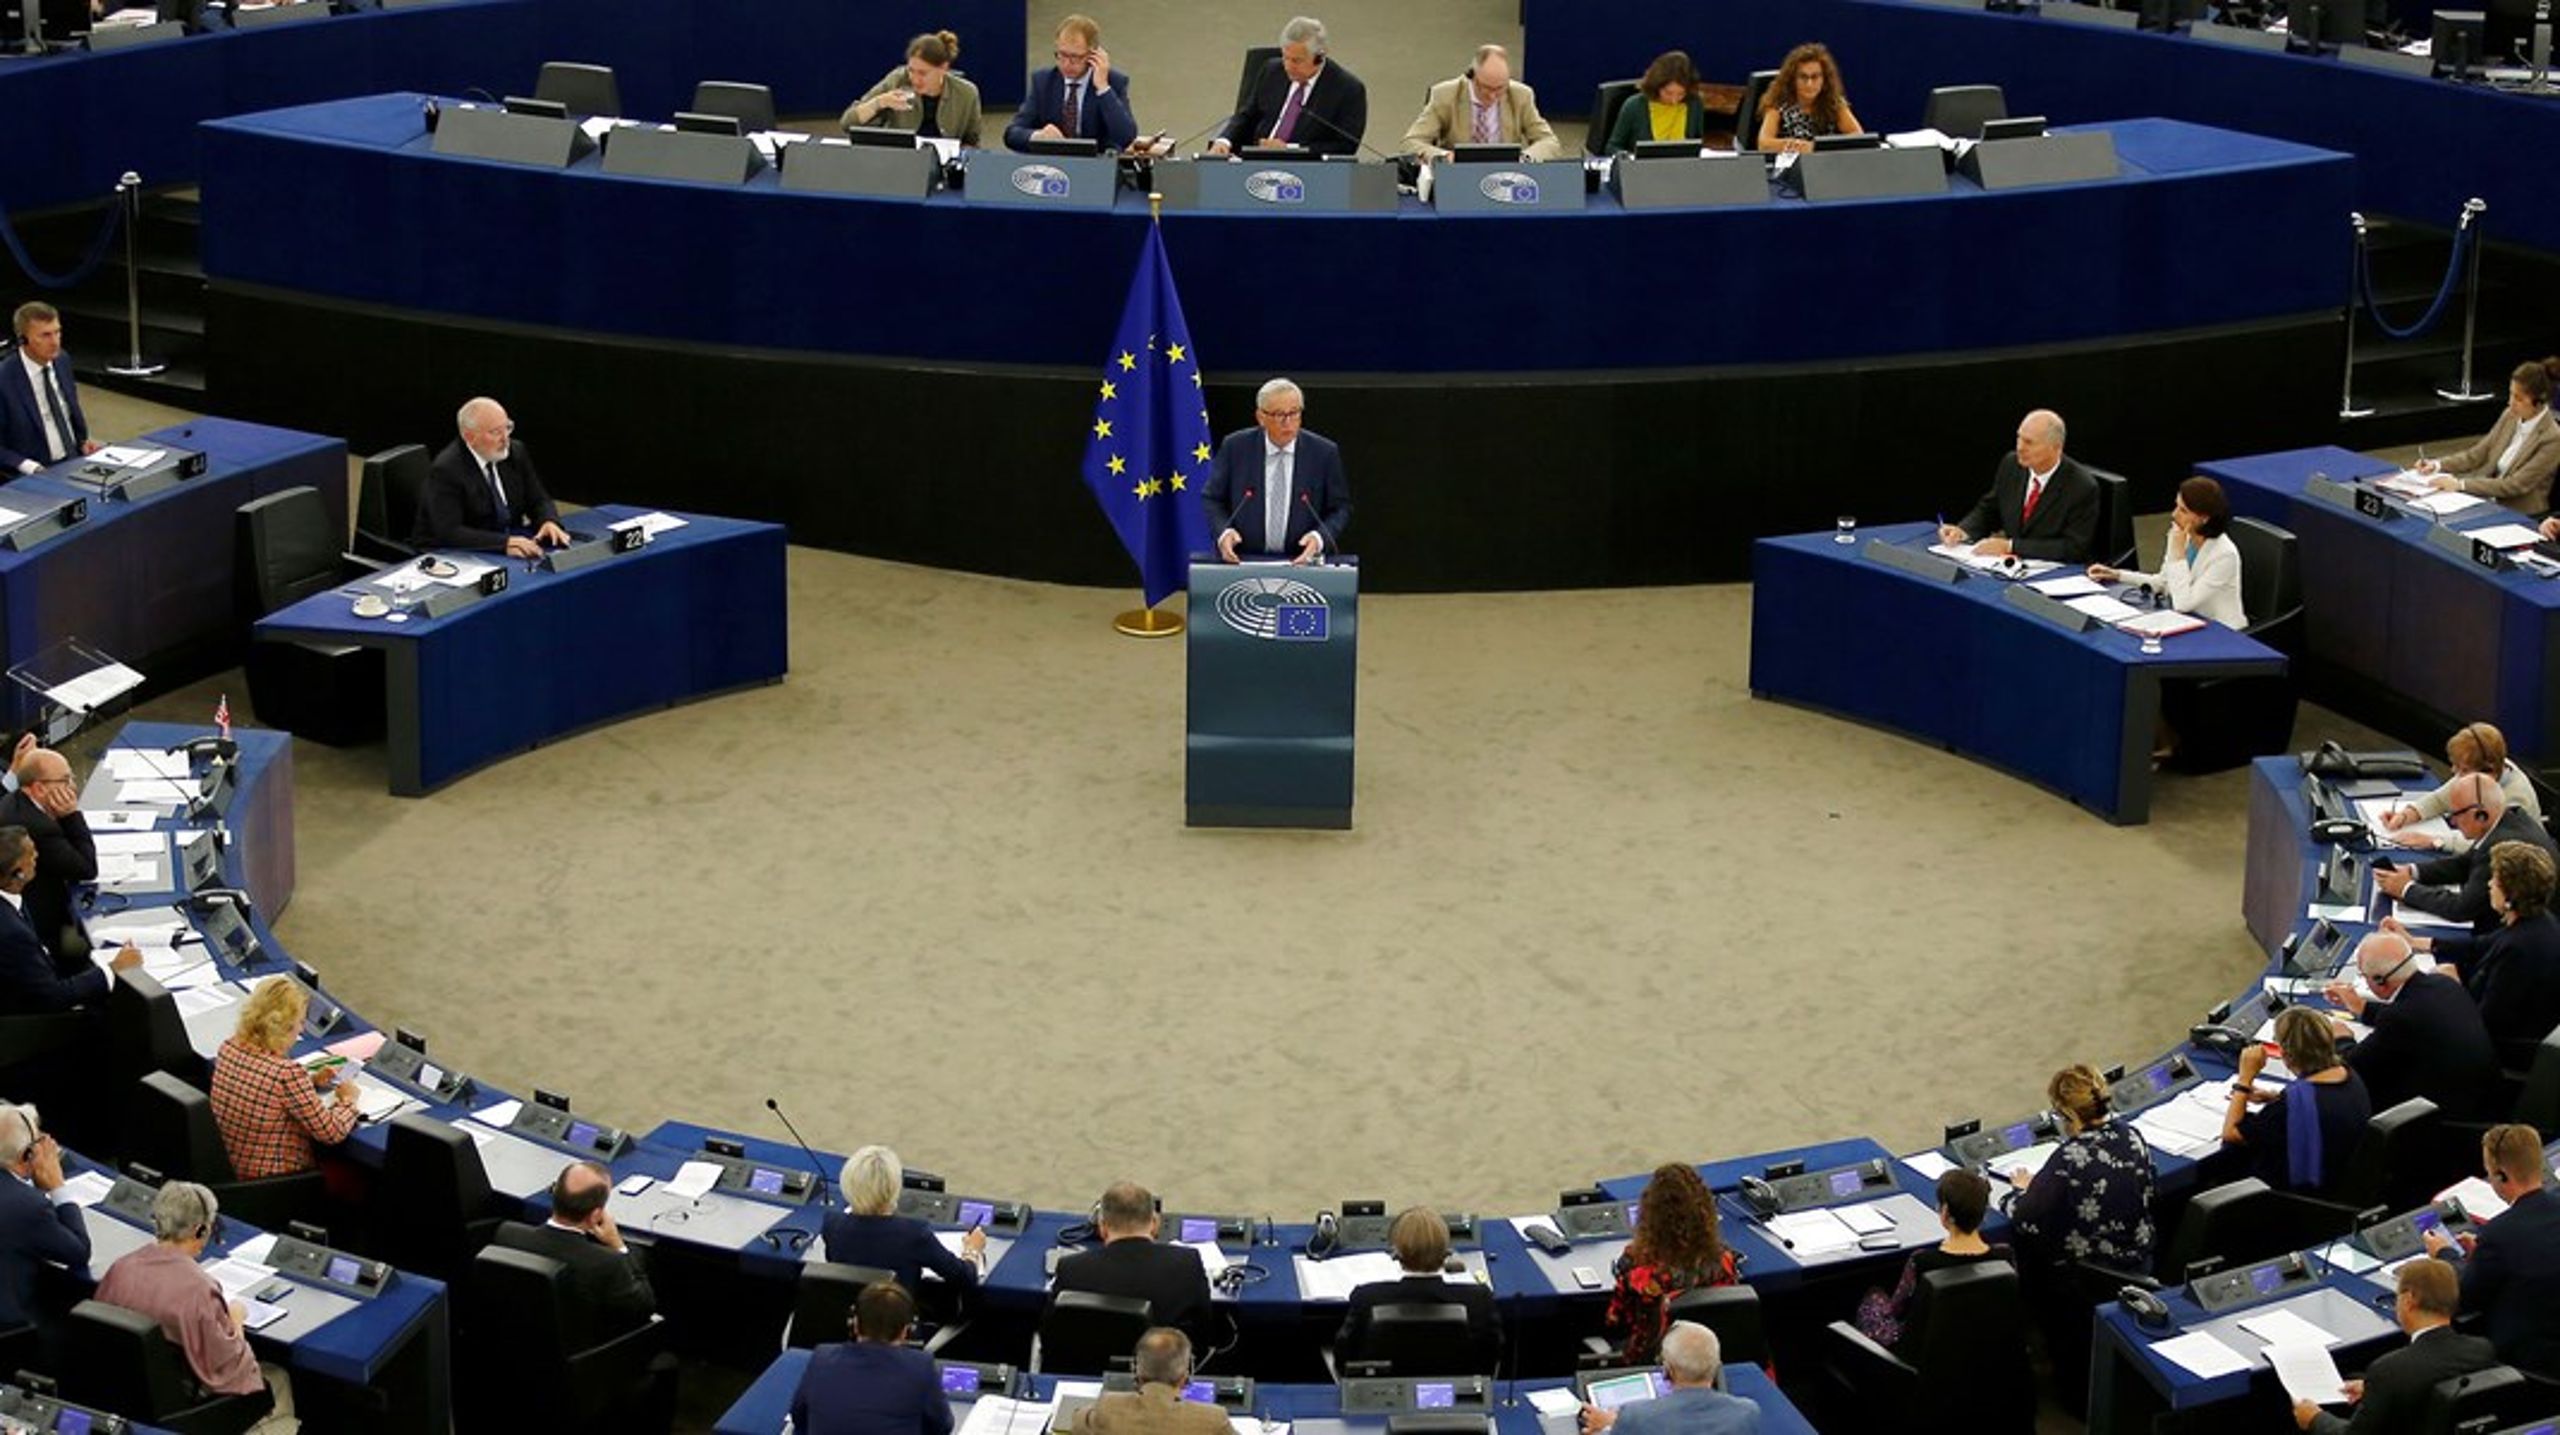 Snart tre år er gået siden EU's dataforordning blev indført i hele unionen - det var dengang&nbsp;formanden for EU-kommissionen hed Jean Claude-Juncker.&nbsp;Følg med i debatten de kommende uger.